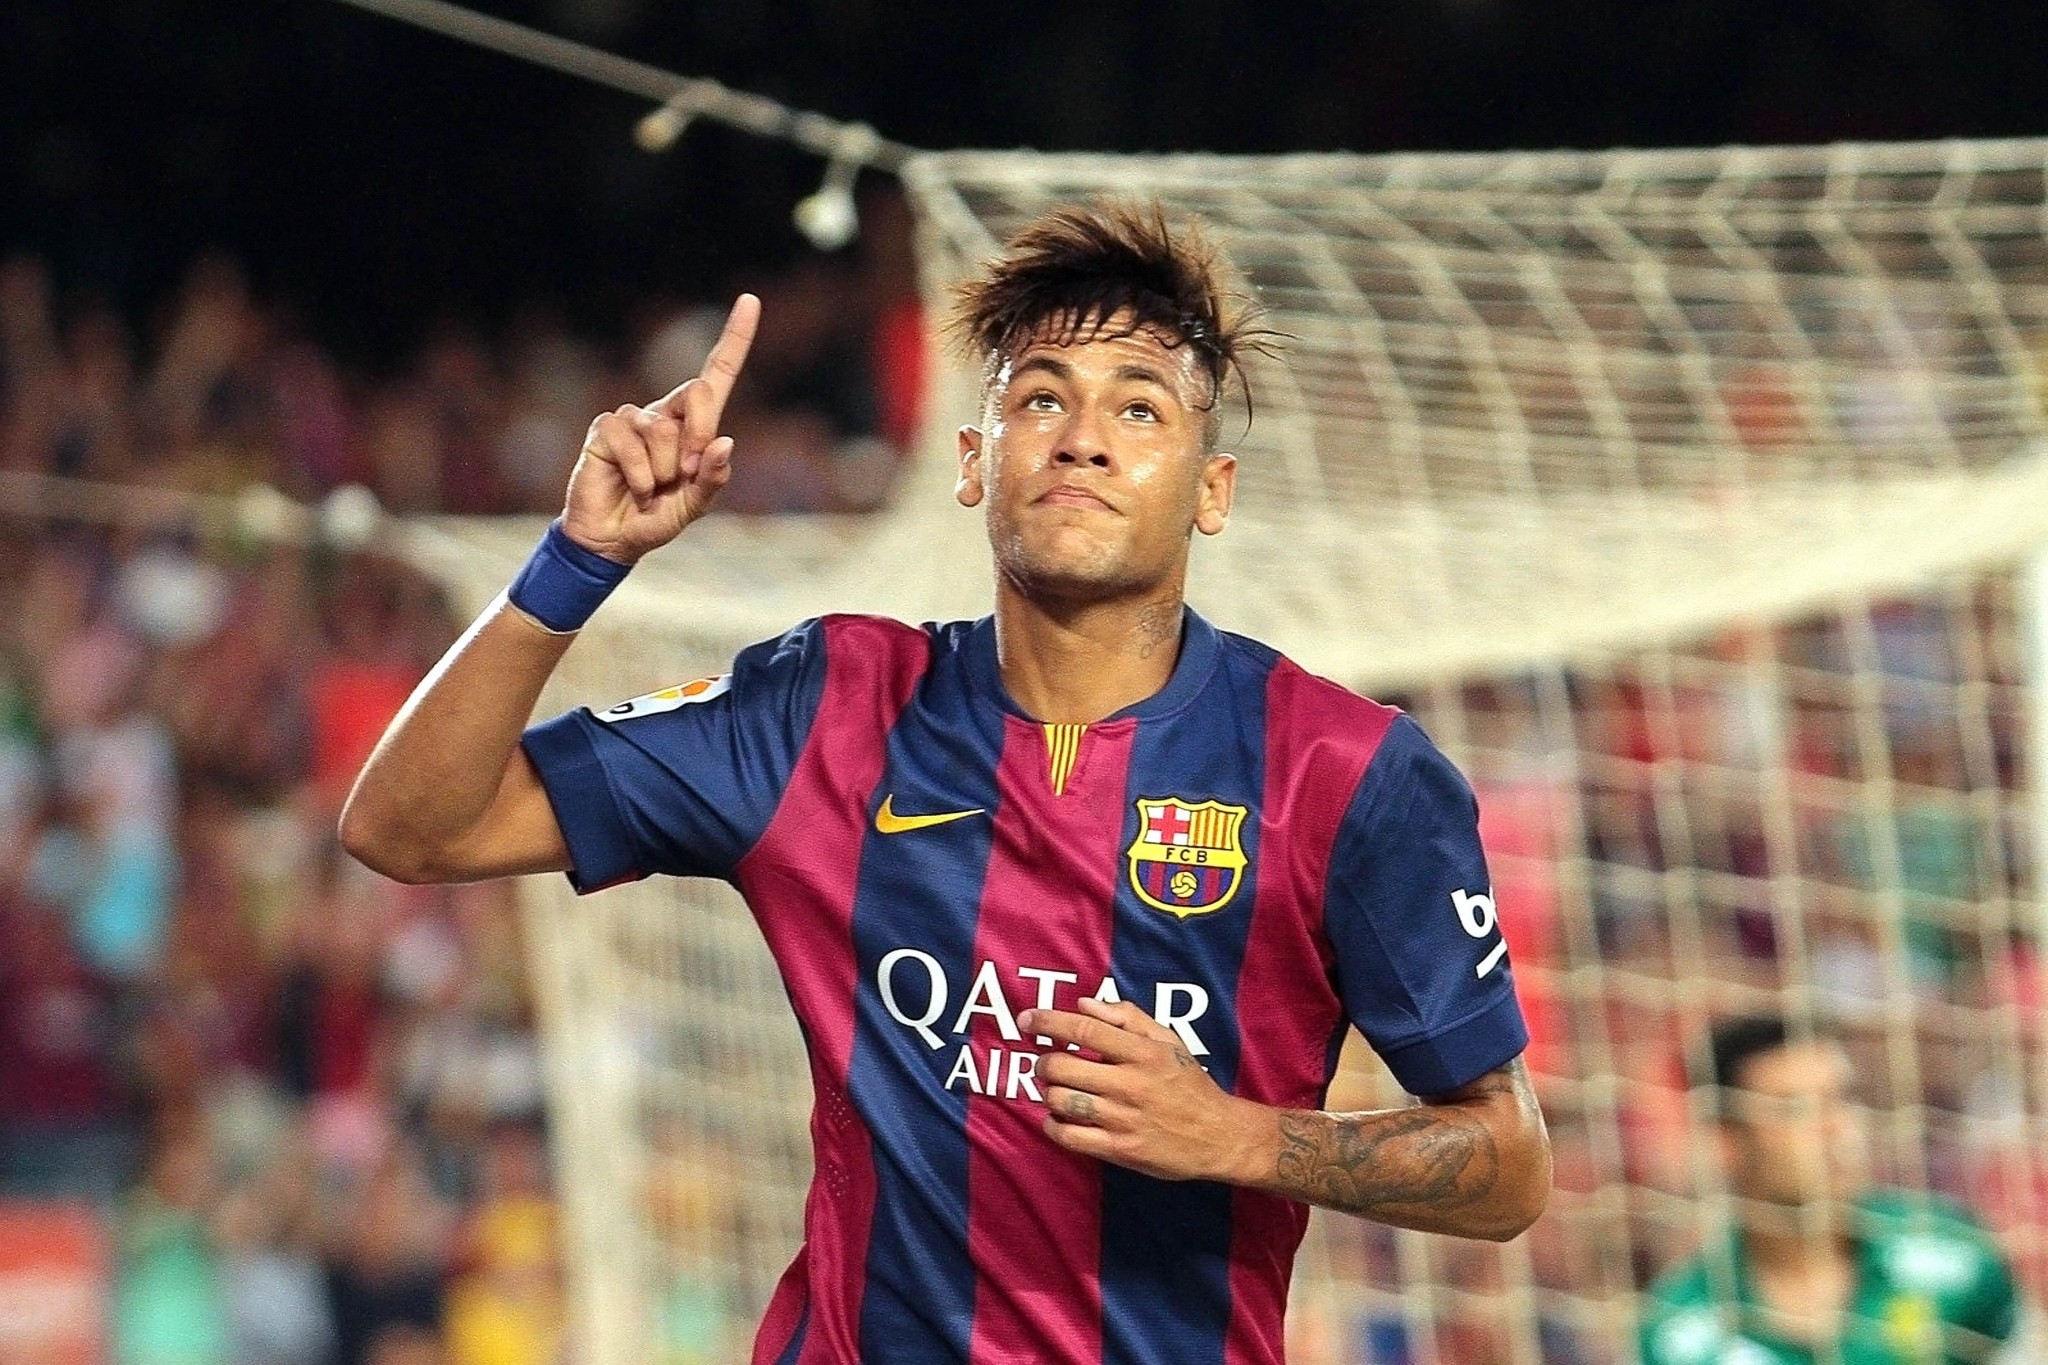 neymar wallpaper,player,soccer player,football player,team sport,sports